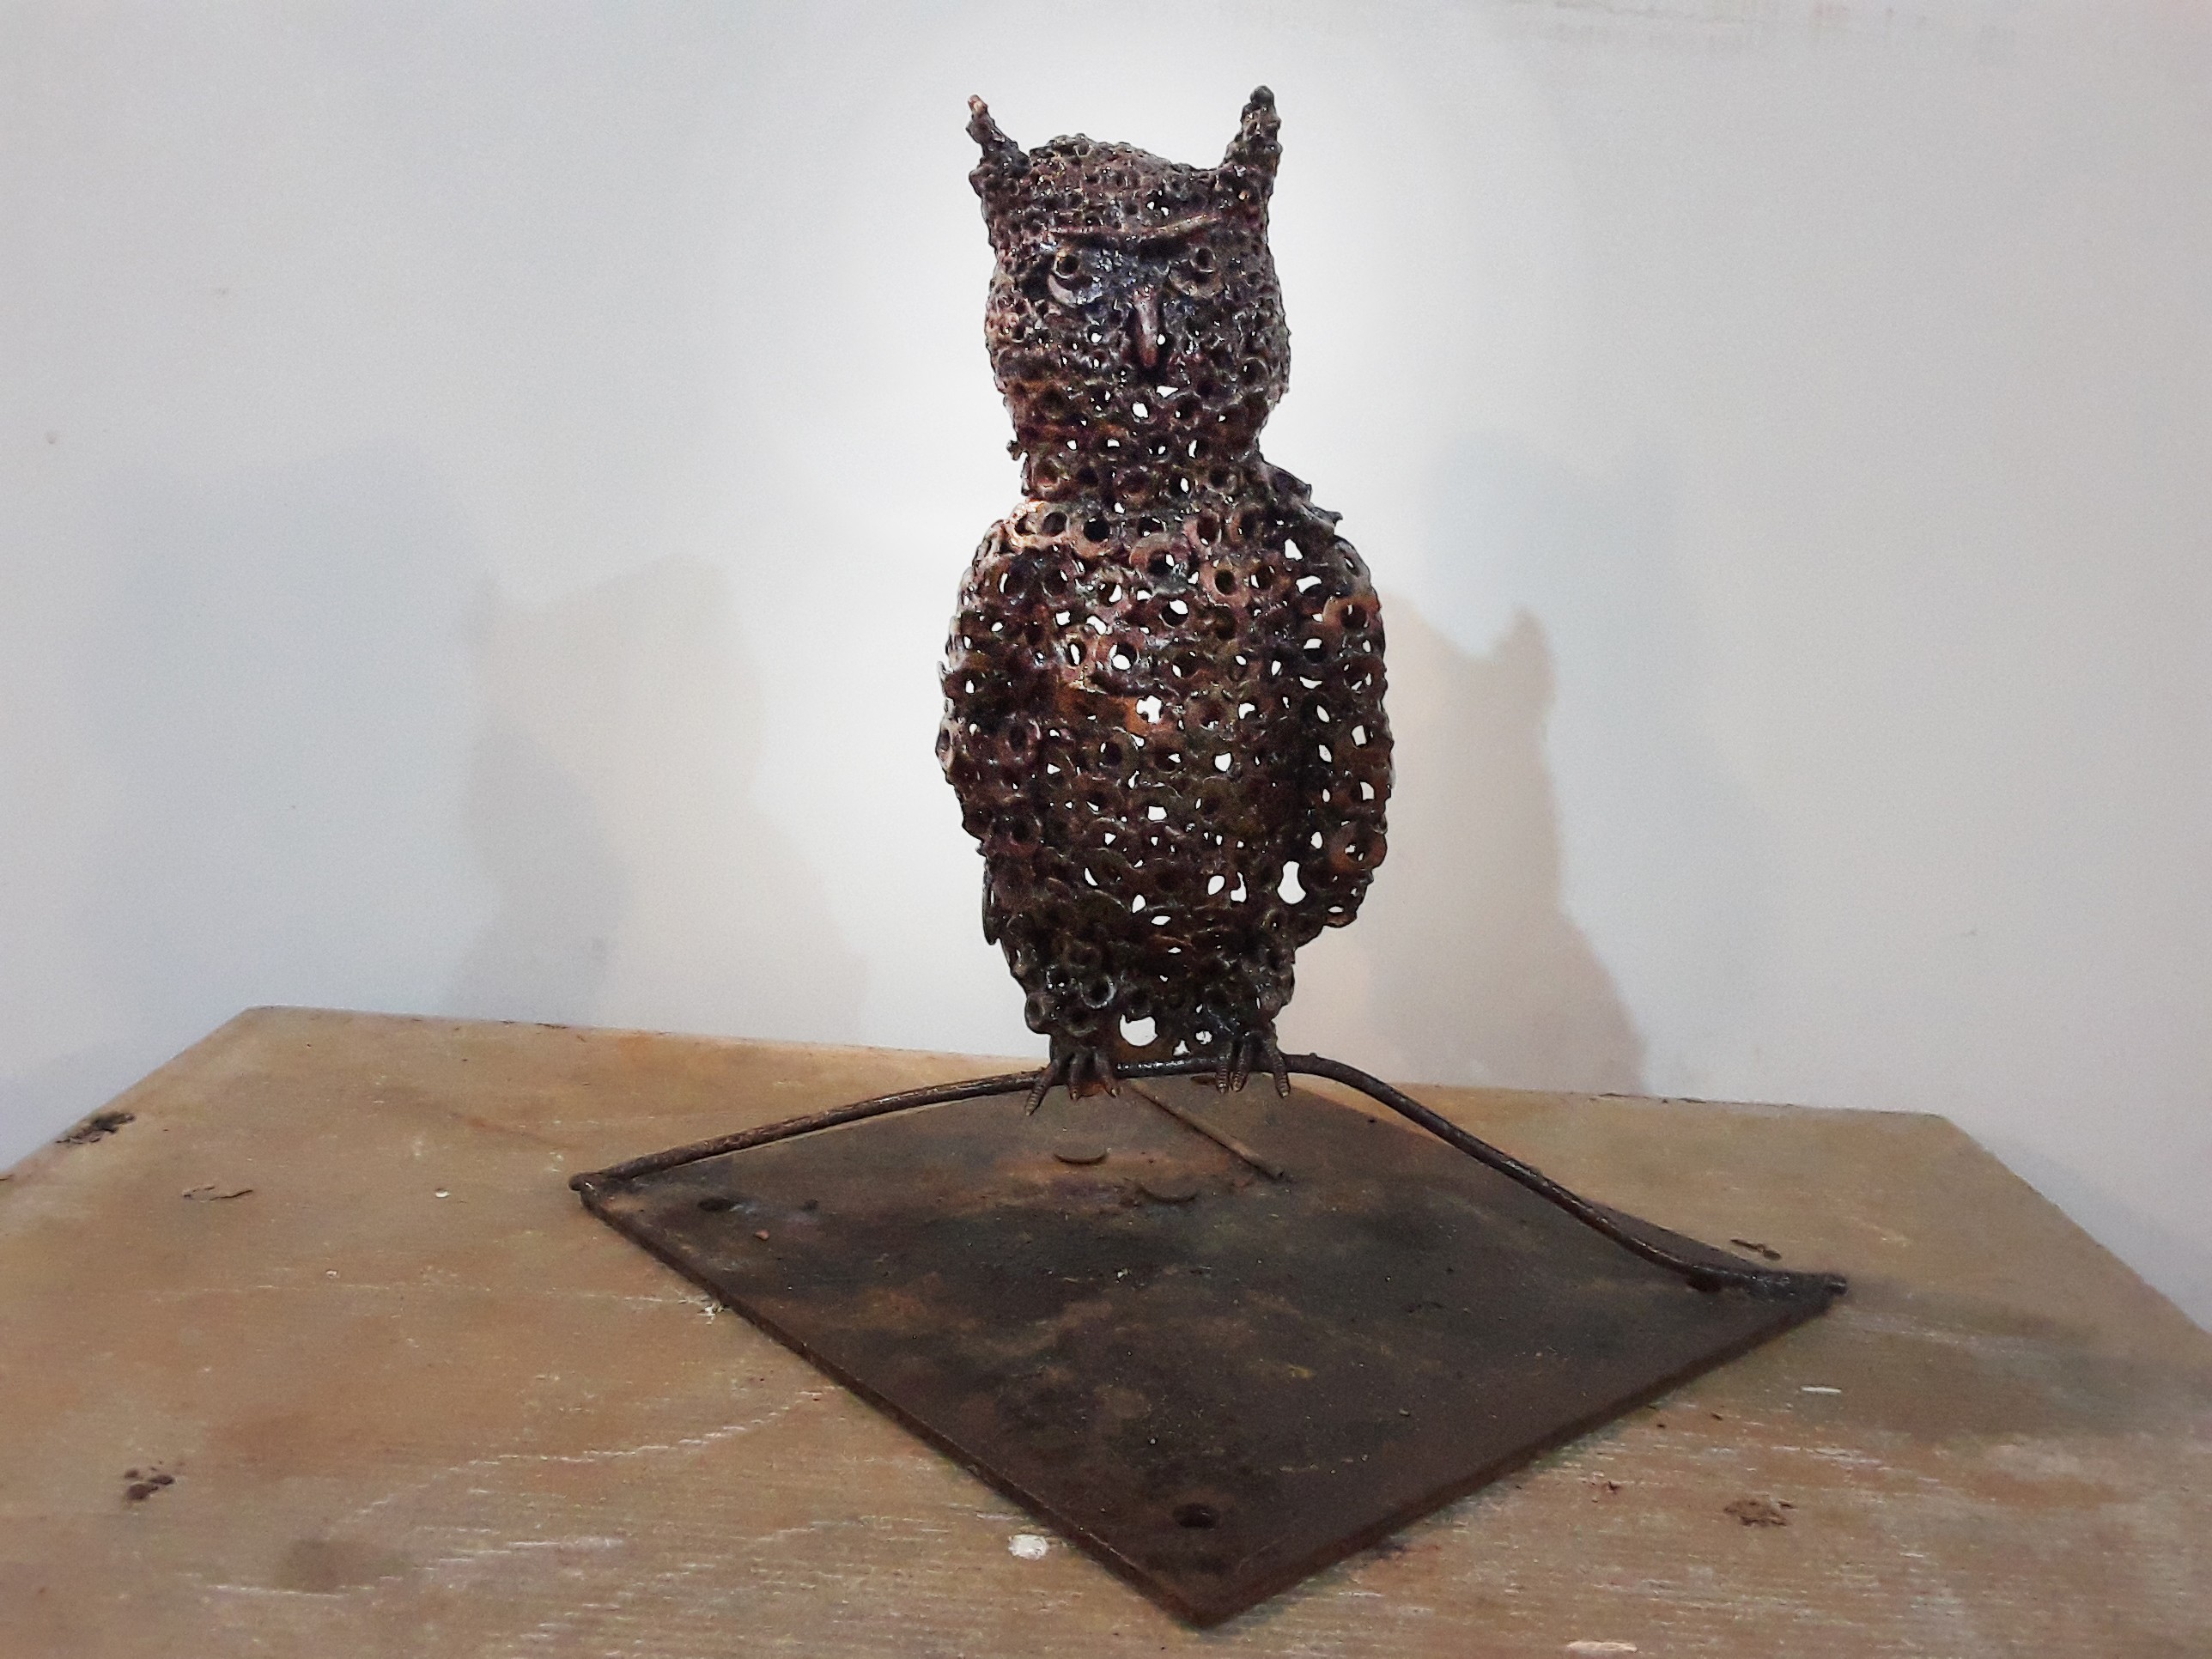 Owl by samith lakmal